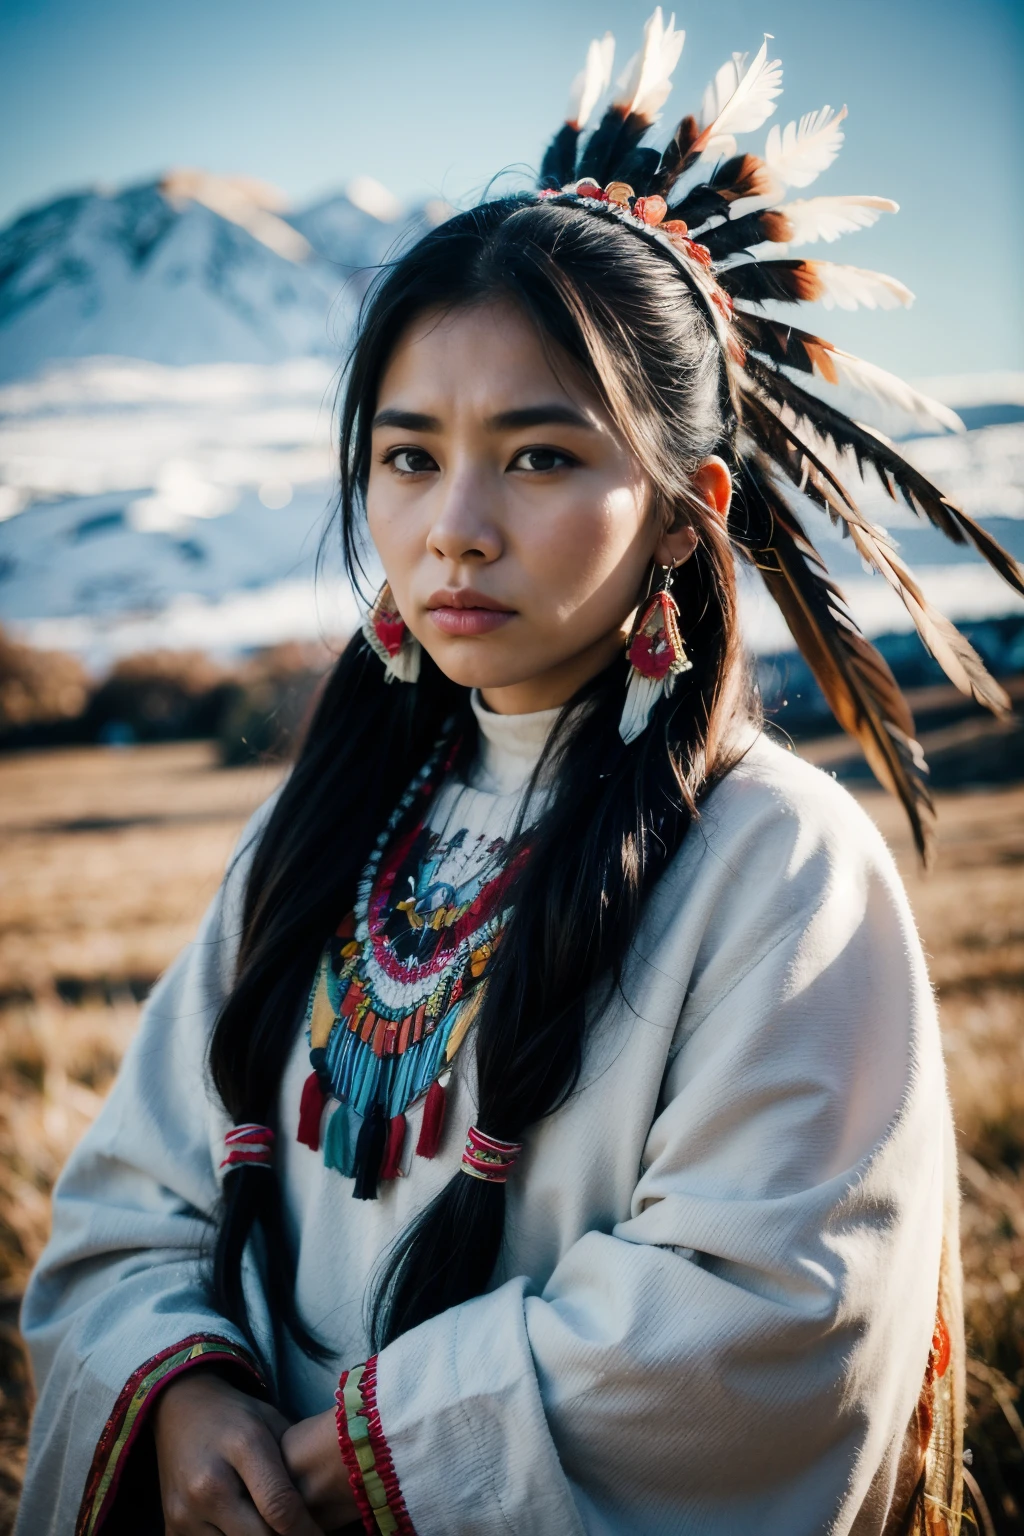 8k, la plus haute qualité, ultra détails, Femme autochtone d&#39;Amérique du Nord, insignes traditionnels amérindiens, Un perlage complexe, coiffe à plumes, expression forte et stoïque, lien profond avec la terre